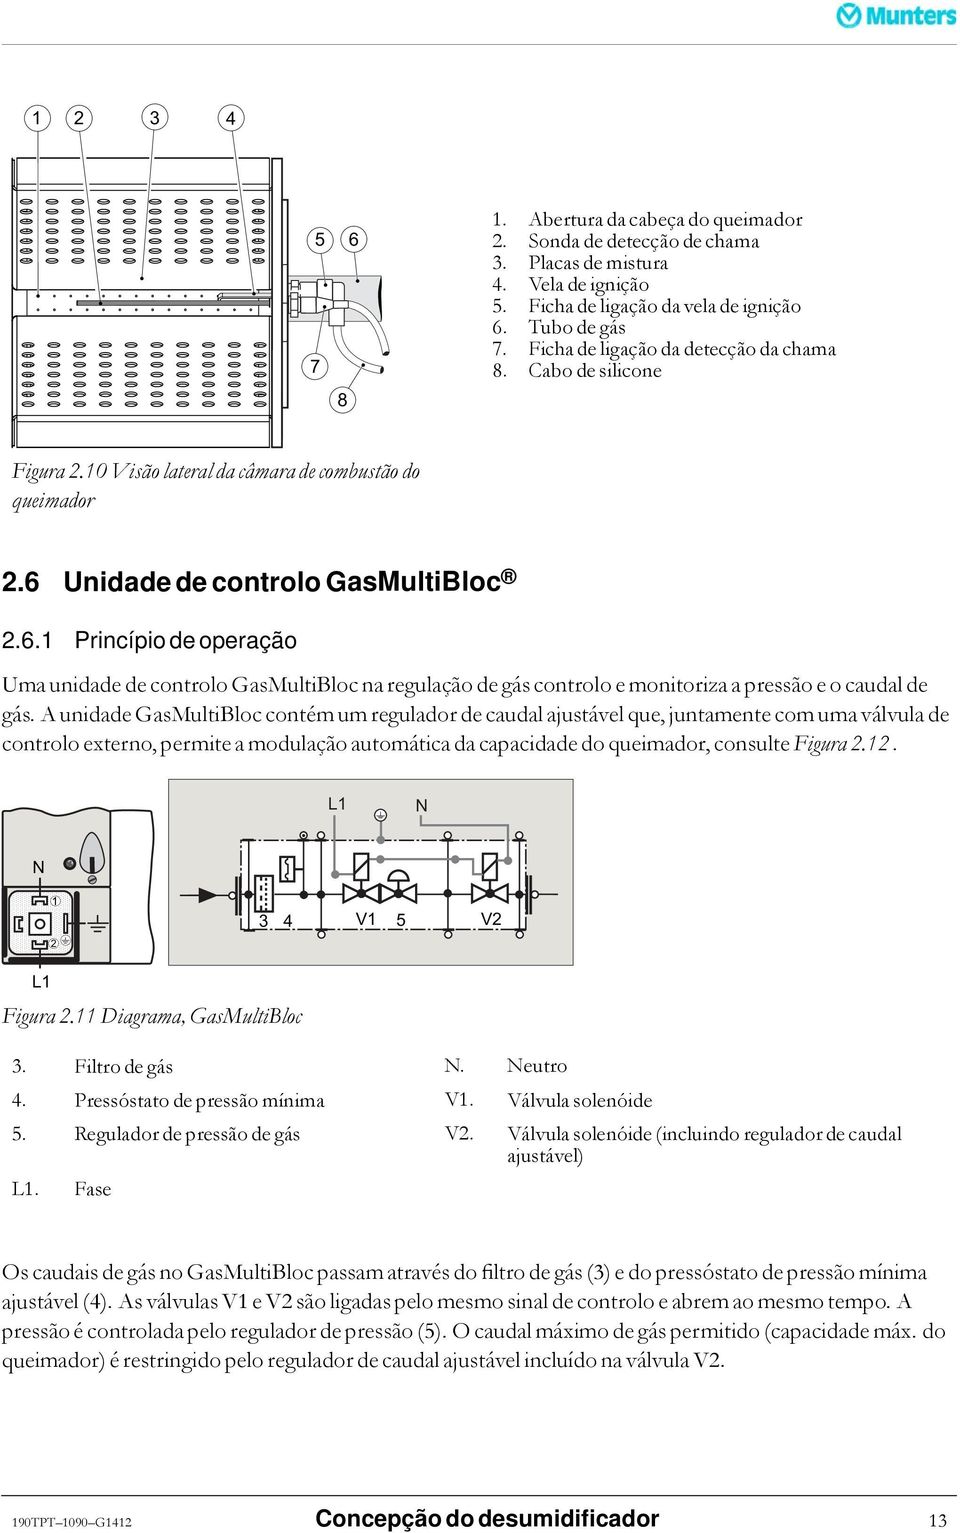 Unidade de controlo GasMultiBloc 2.6.1 Princípio de operação Uma unidade de controlo GasMultiBloc na regulação de gás controlo e monitoriza a pressão e o caudal de gás.